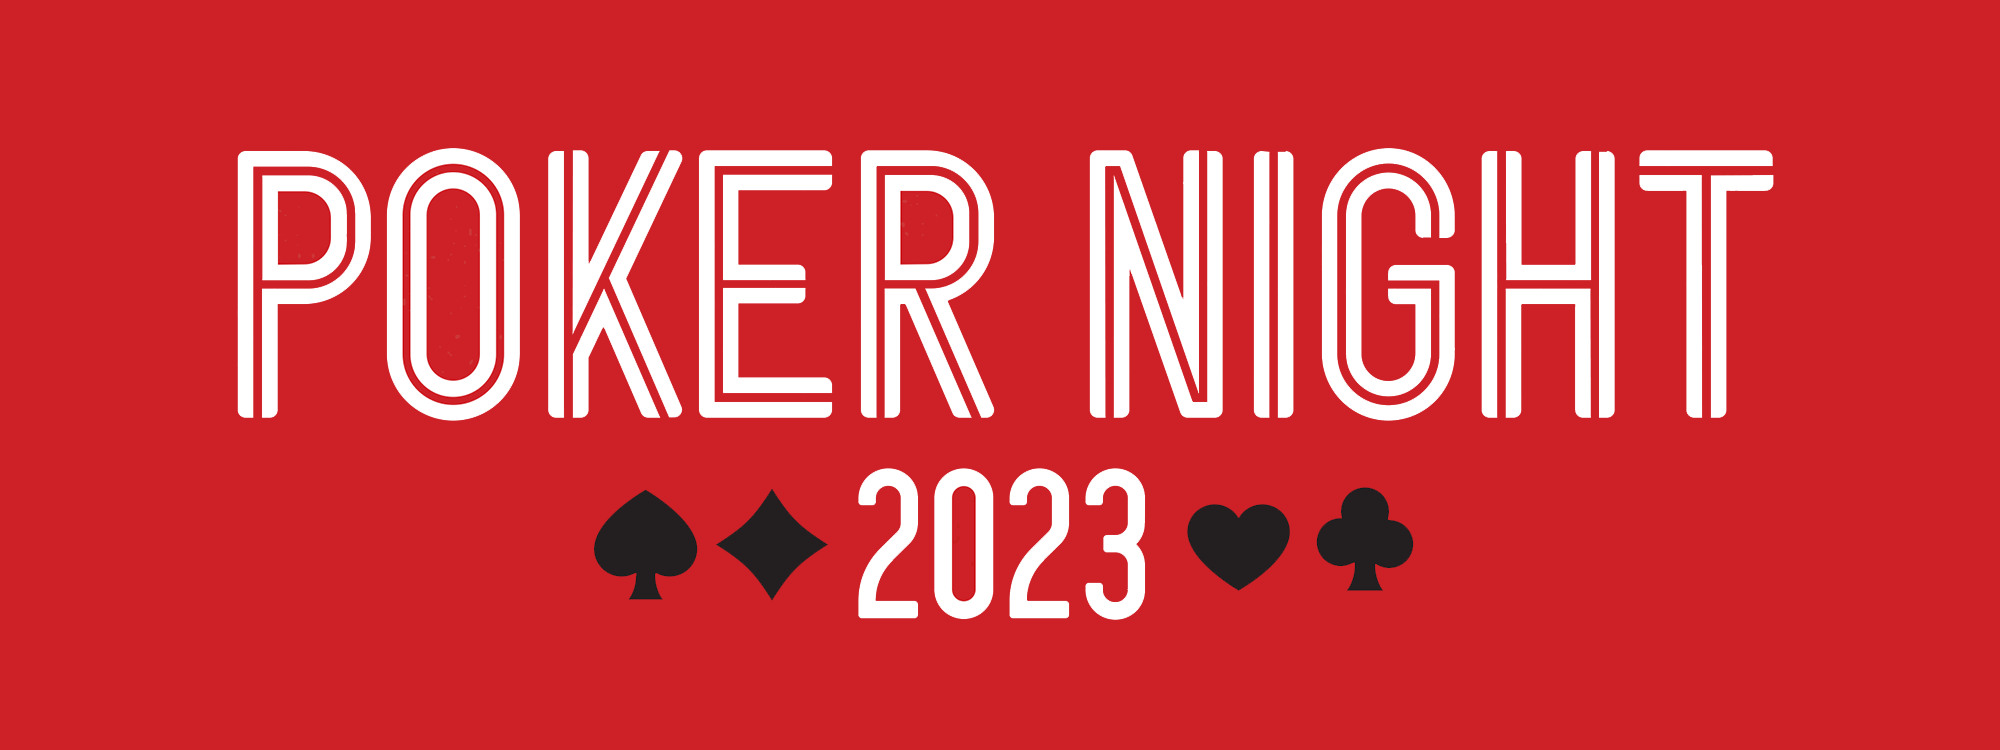 Poker Night 2023